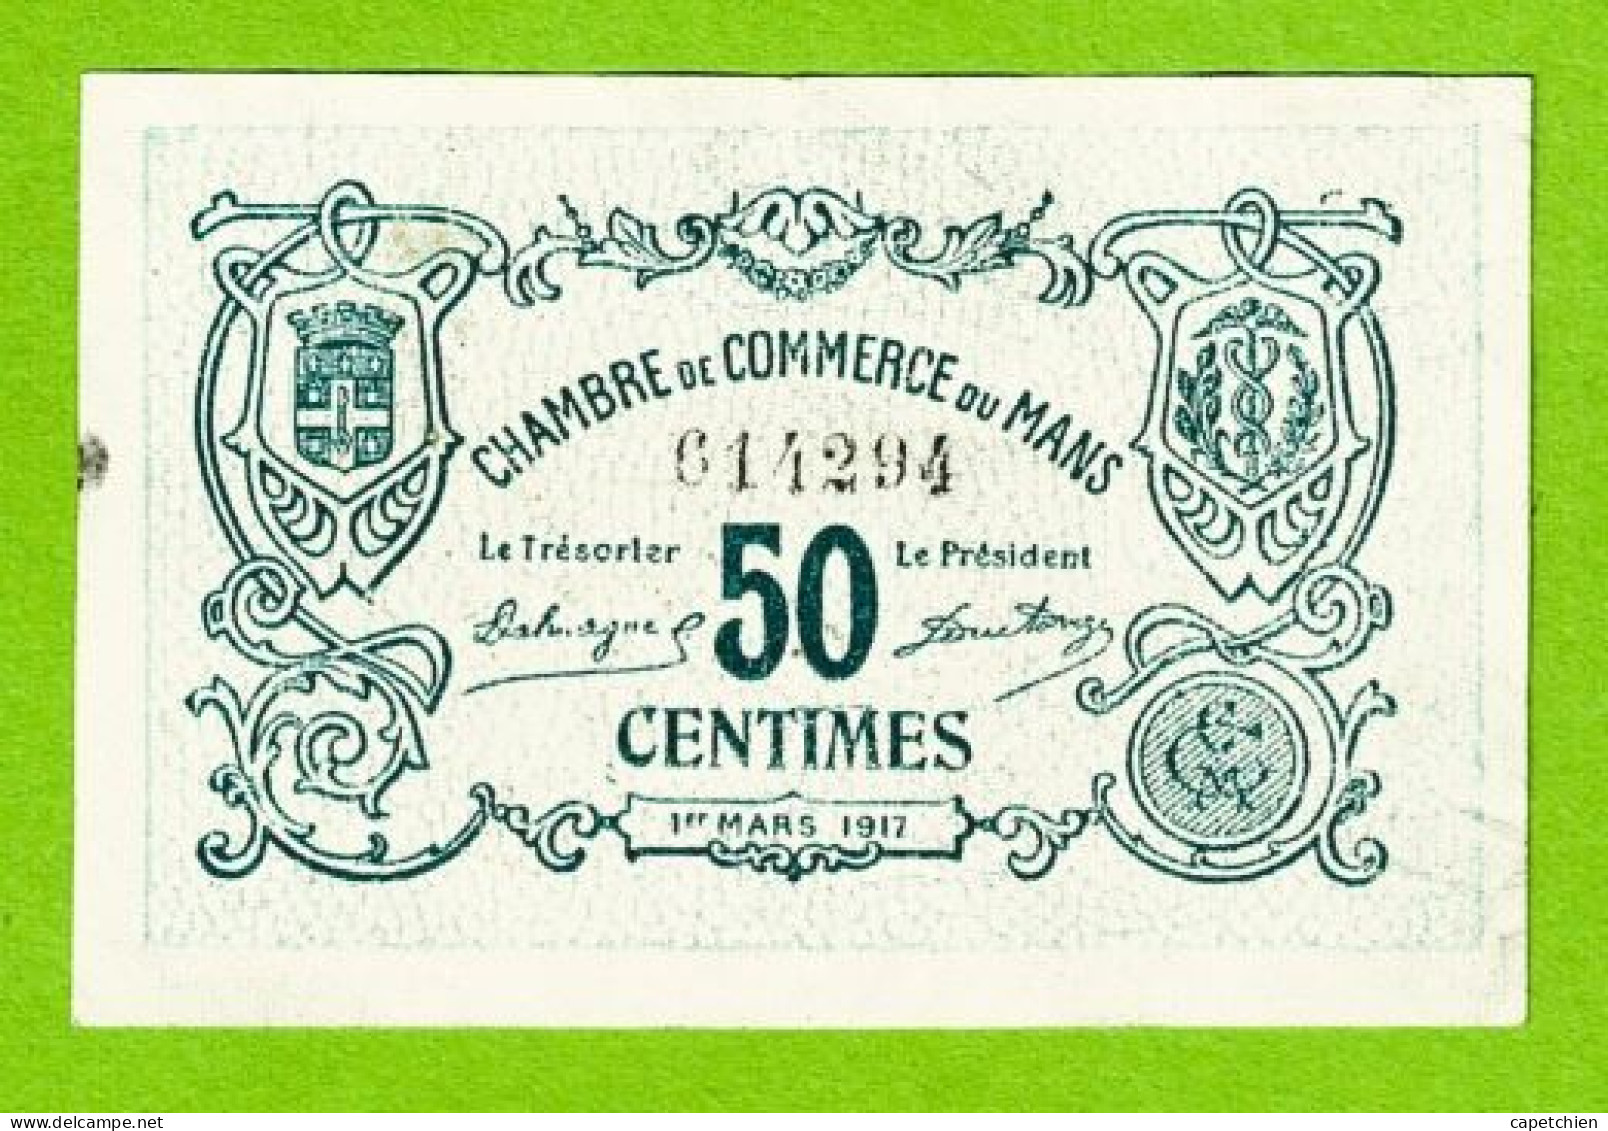 FRANCE / LE MANS / 50 CENTIMES / 1er MARS 1917 / N° 614294 - 2eme SERIE - Handelskammer